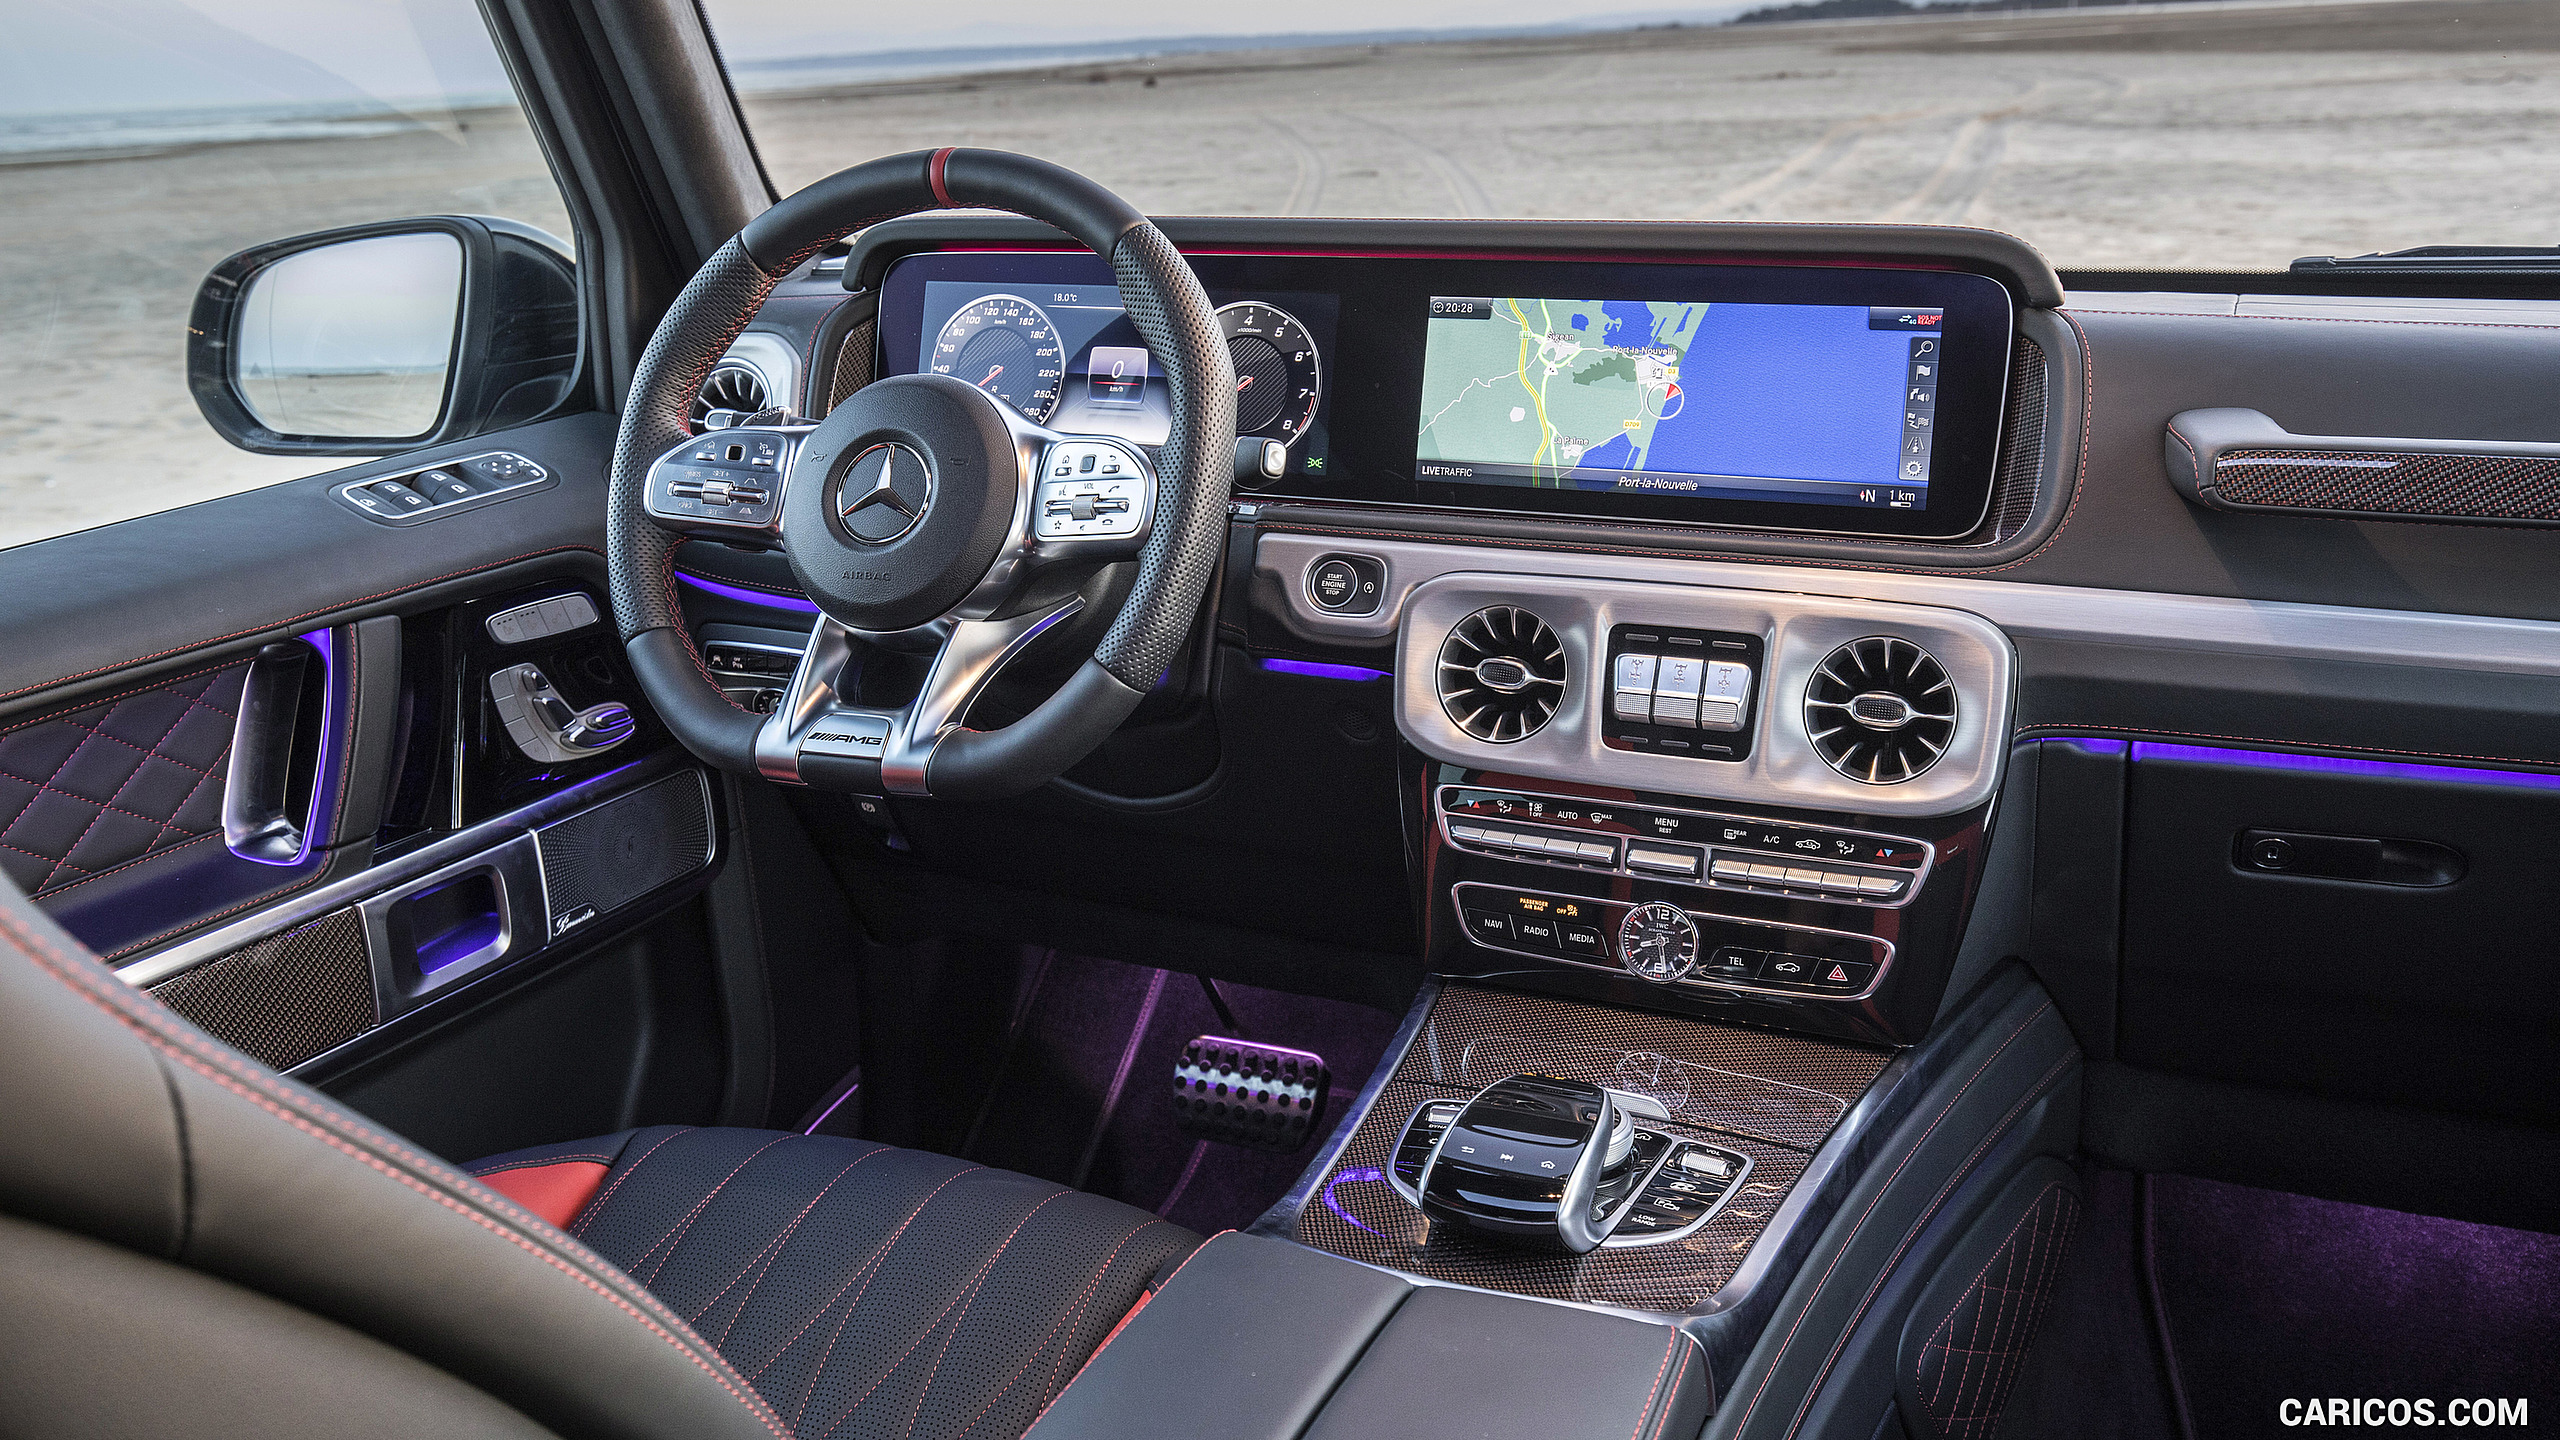 2019 Mercedes Amg G63 Interior Hd Wallpaper 197